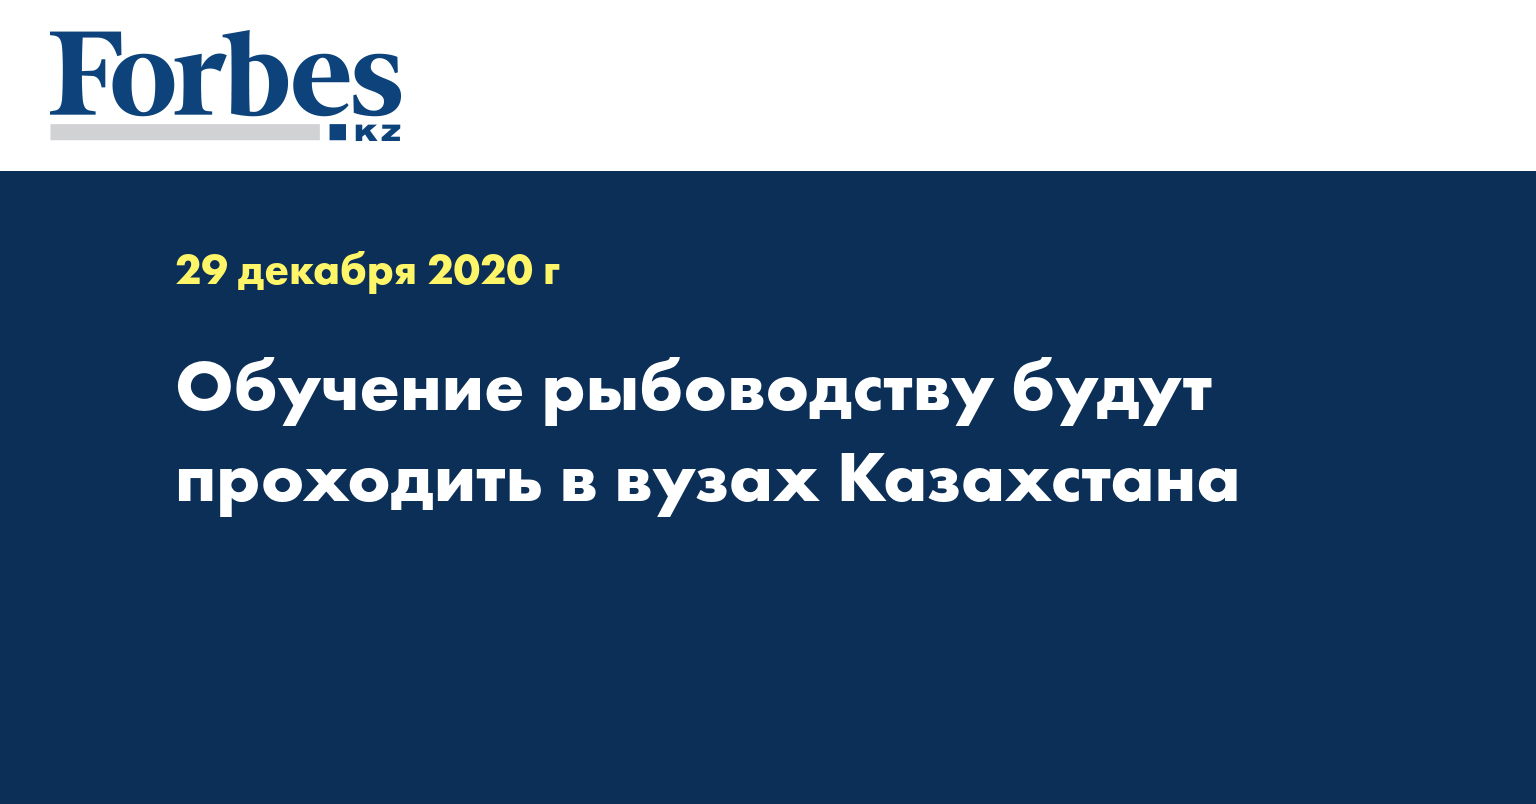 Обучение рыбоводству будут проходить в вузах Казахстана